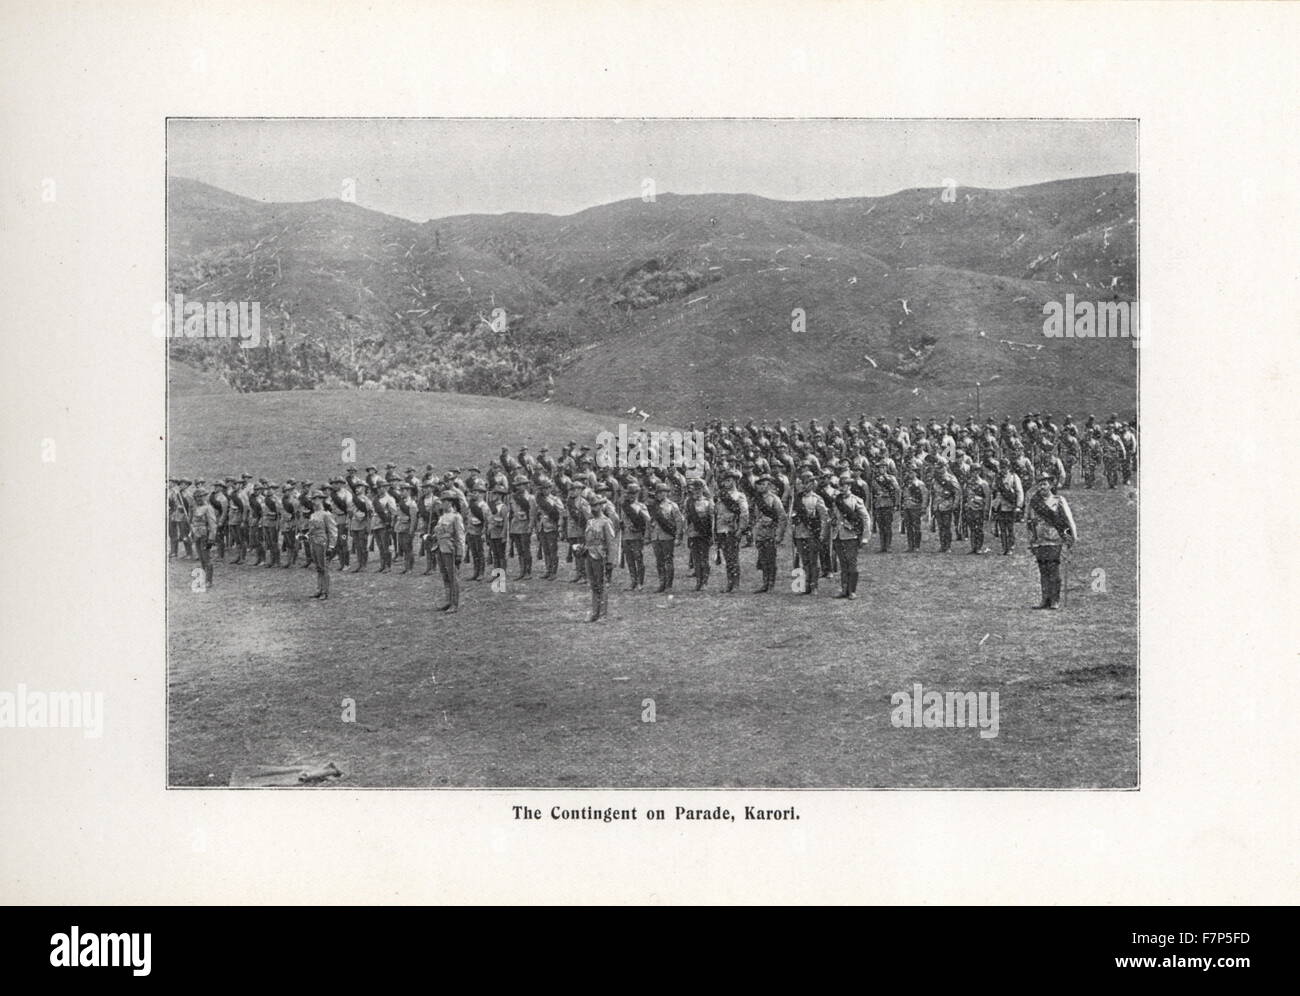 Fotografía del contingente en un desfile, Karori. Fecha 1899 Foto de stock